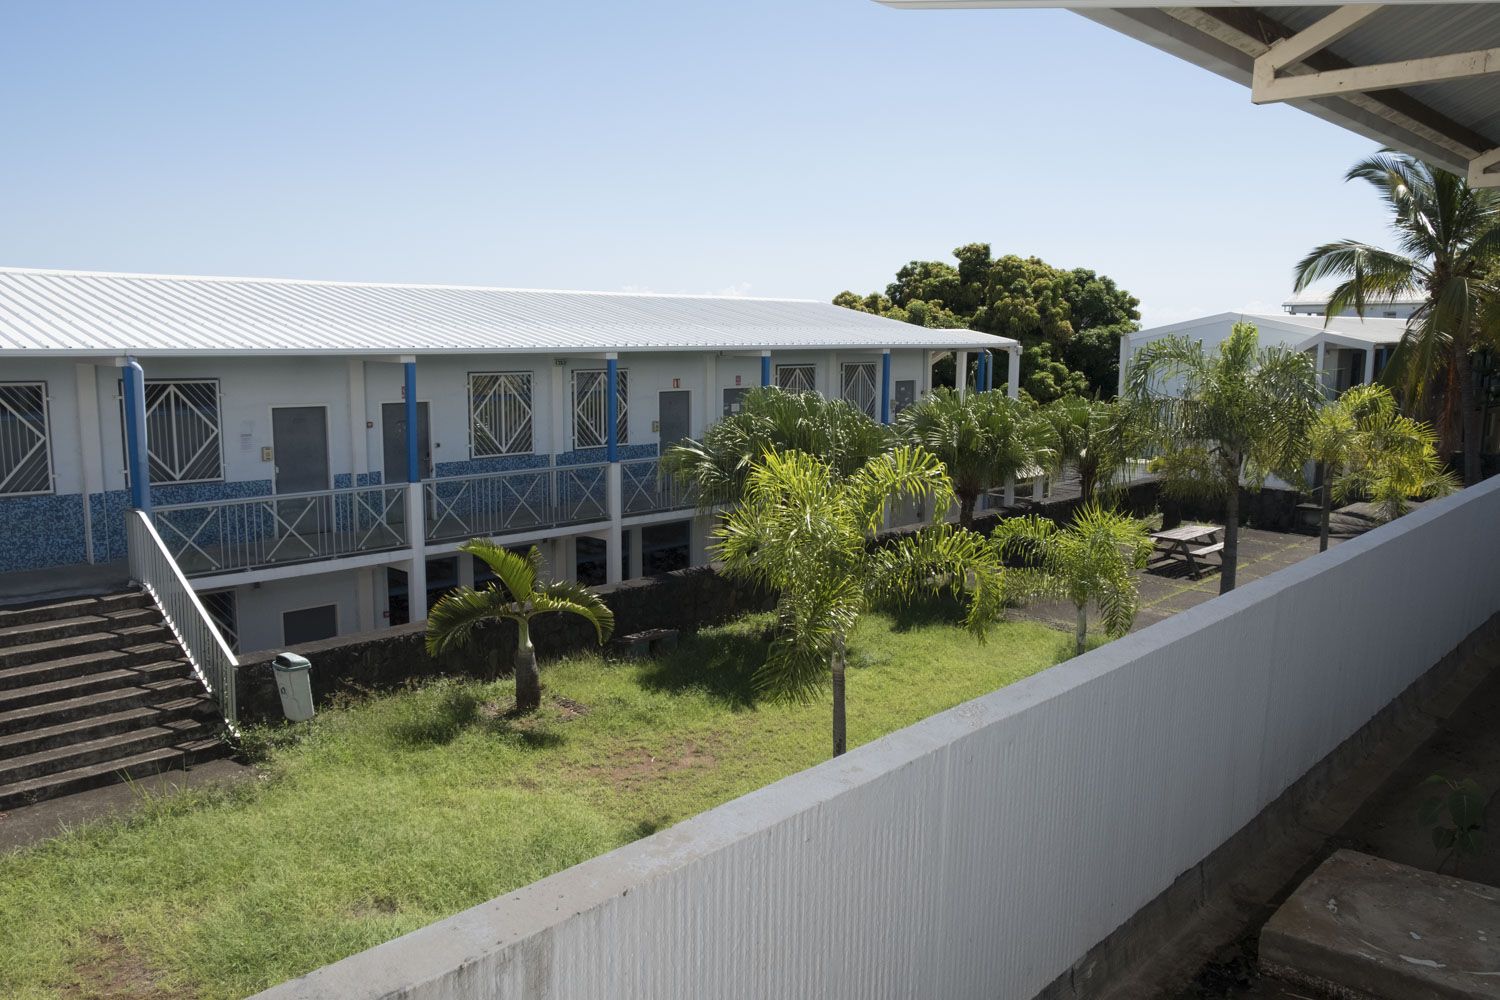 Les salles de classes de l’UFR Sciences et Technologies se trouvent dans ses bâtiments. L’université de la Réunion compte plus de 10 000 étudiants inscrits dans cinq UFR différents : Droit et Economie ; Sciences et Technologies ; Lettres et Sciences Humaines ; Sciences de l’Homme et de l’Environnement ; Santé.